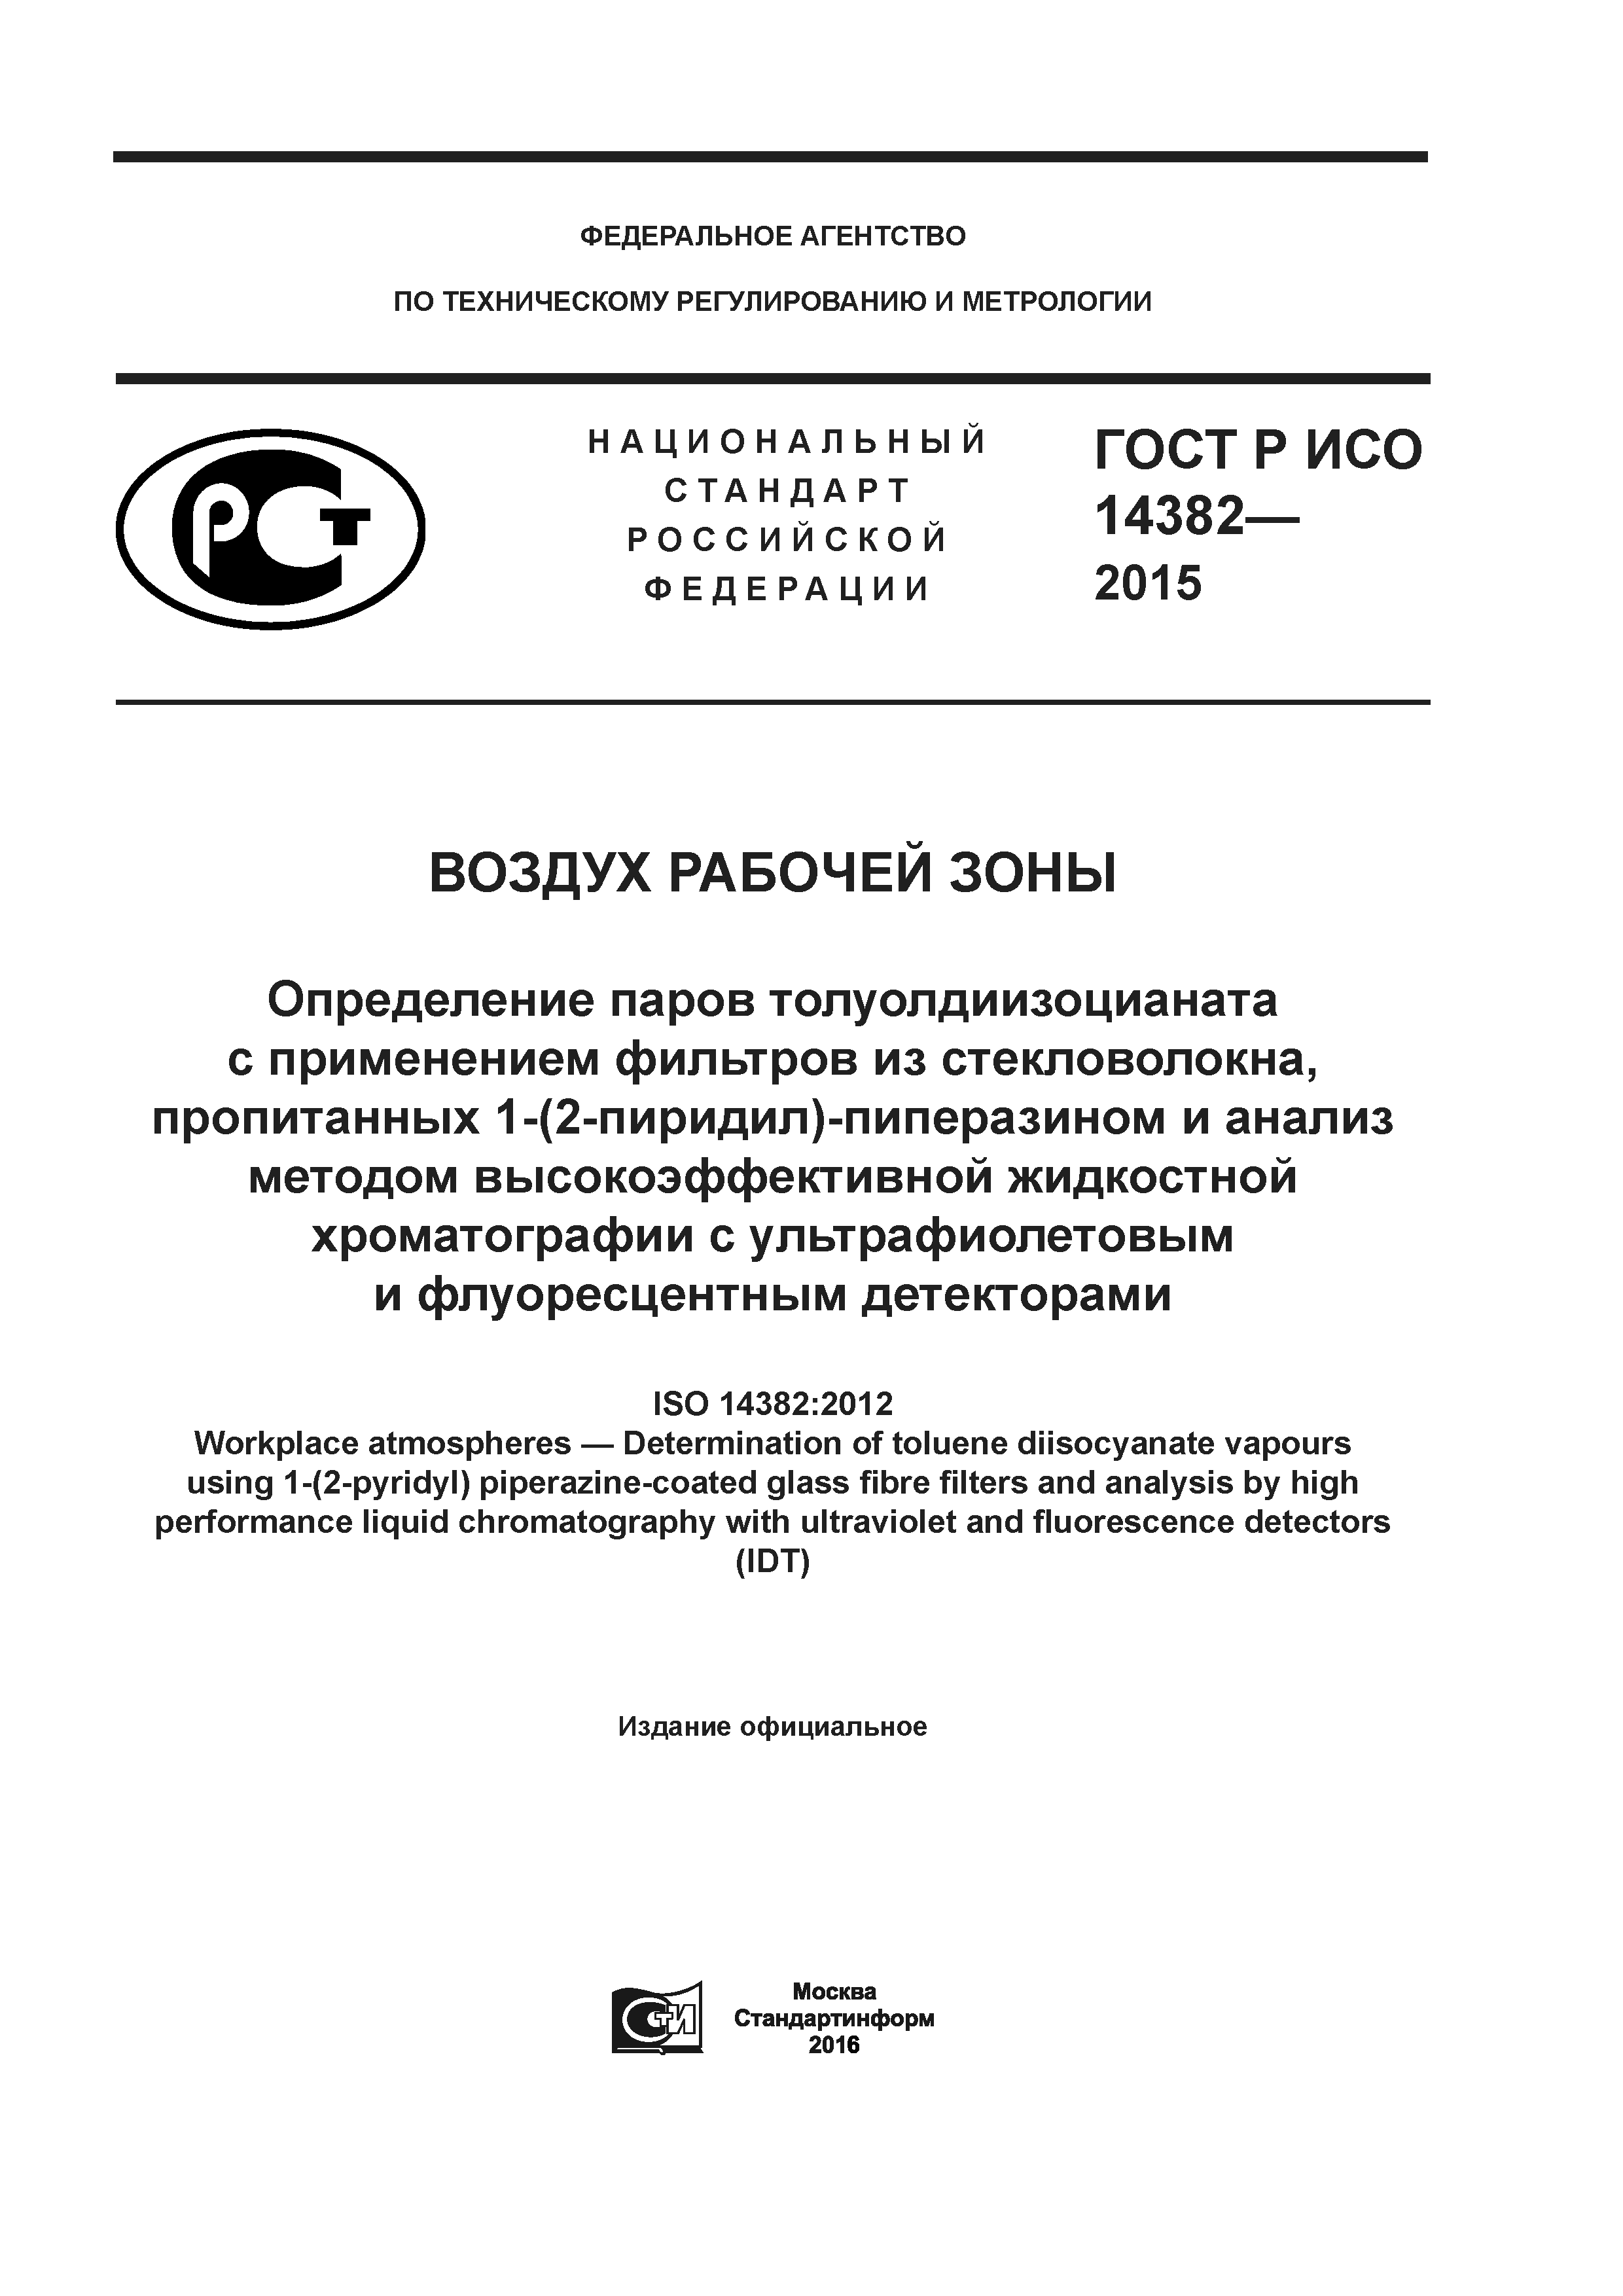 ГОСТ Р ИСО 14382-2015